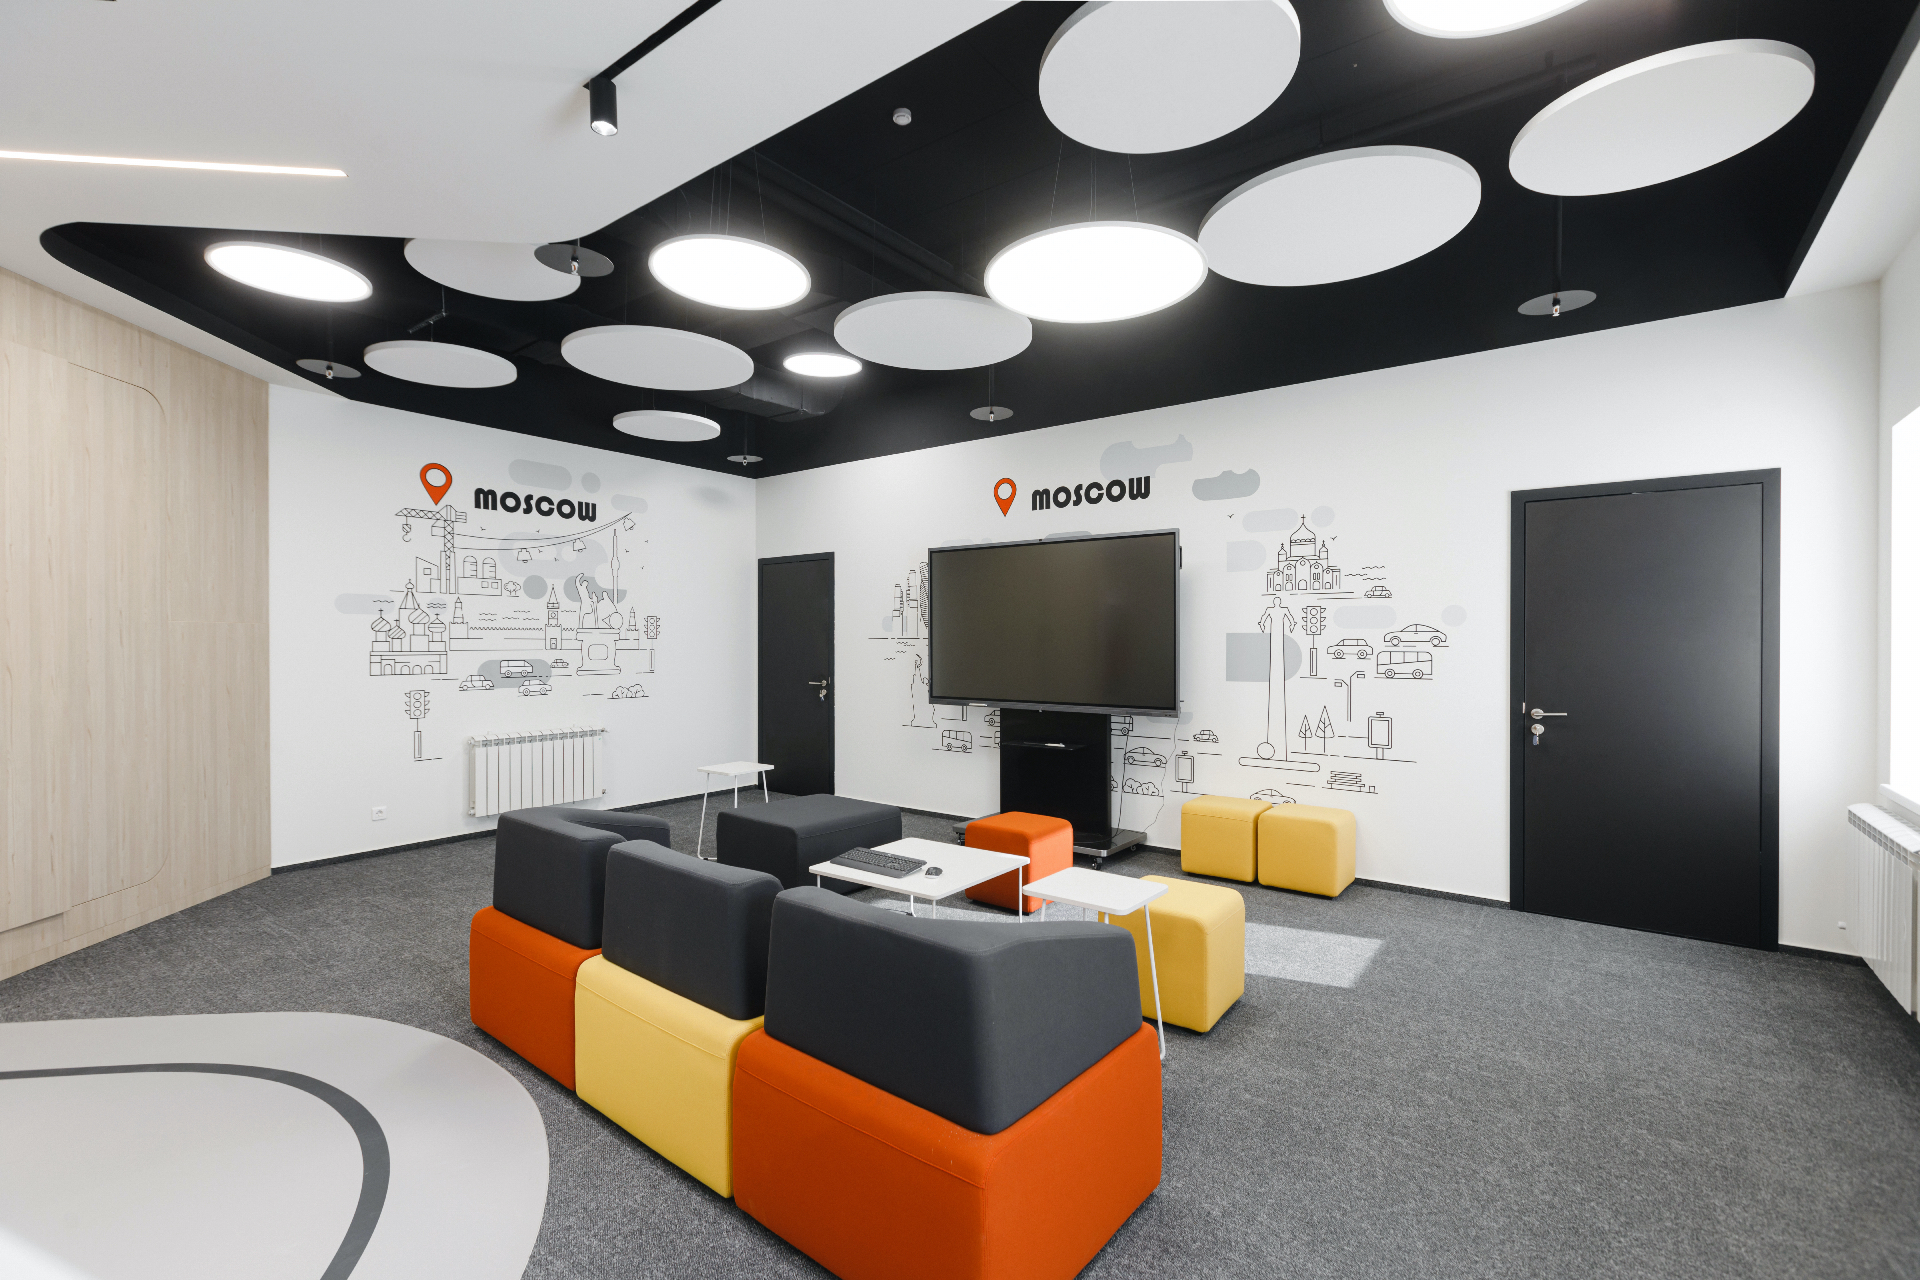 Как выглядит новый офис Huawei в Новосибирске